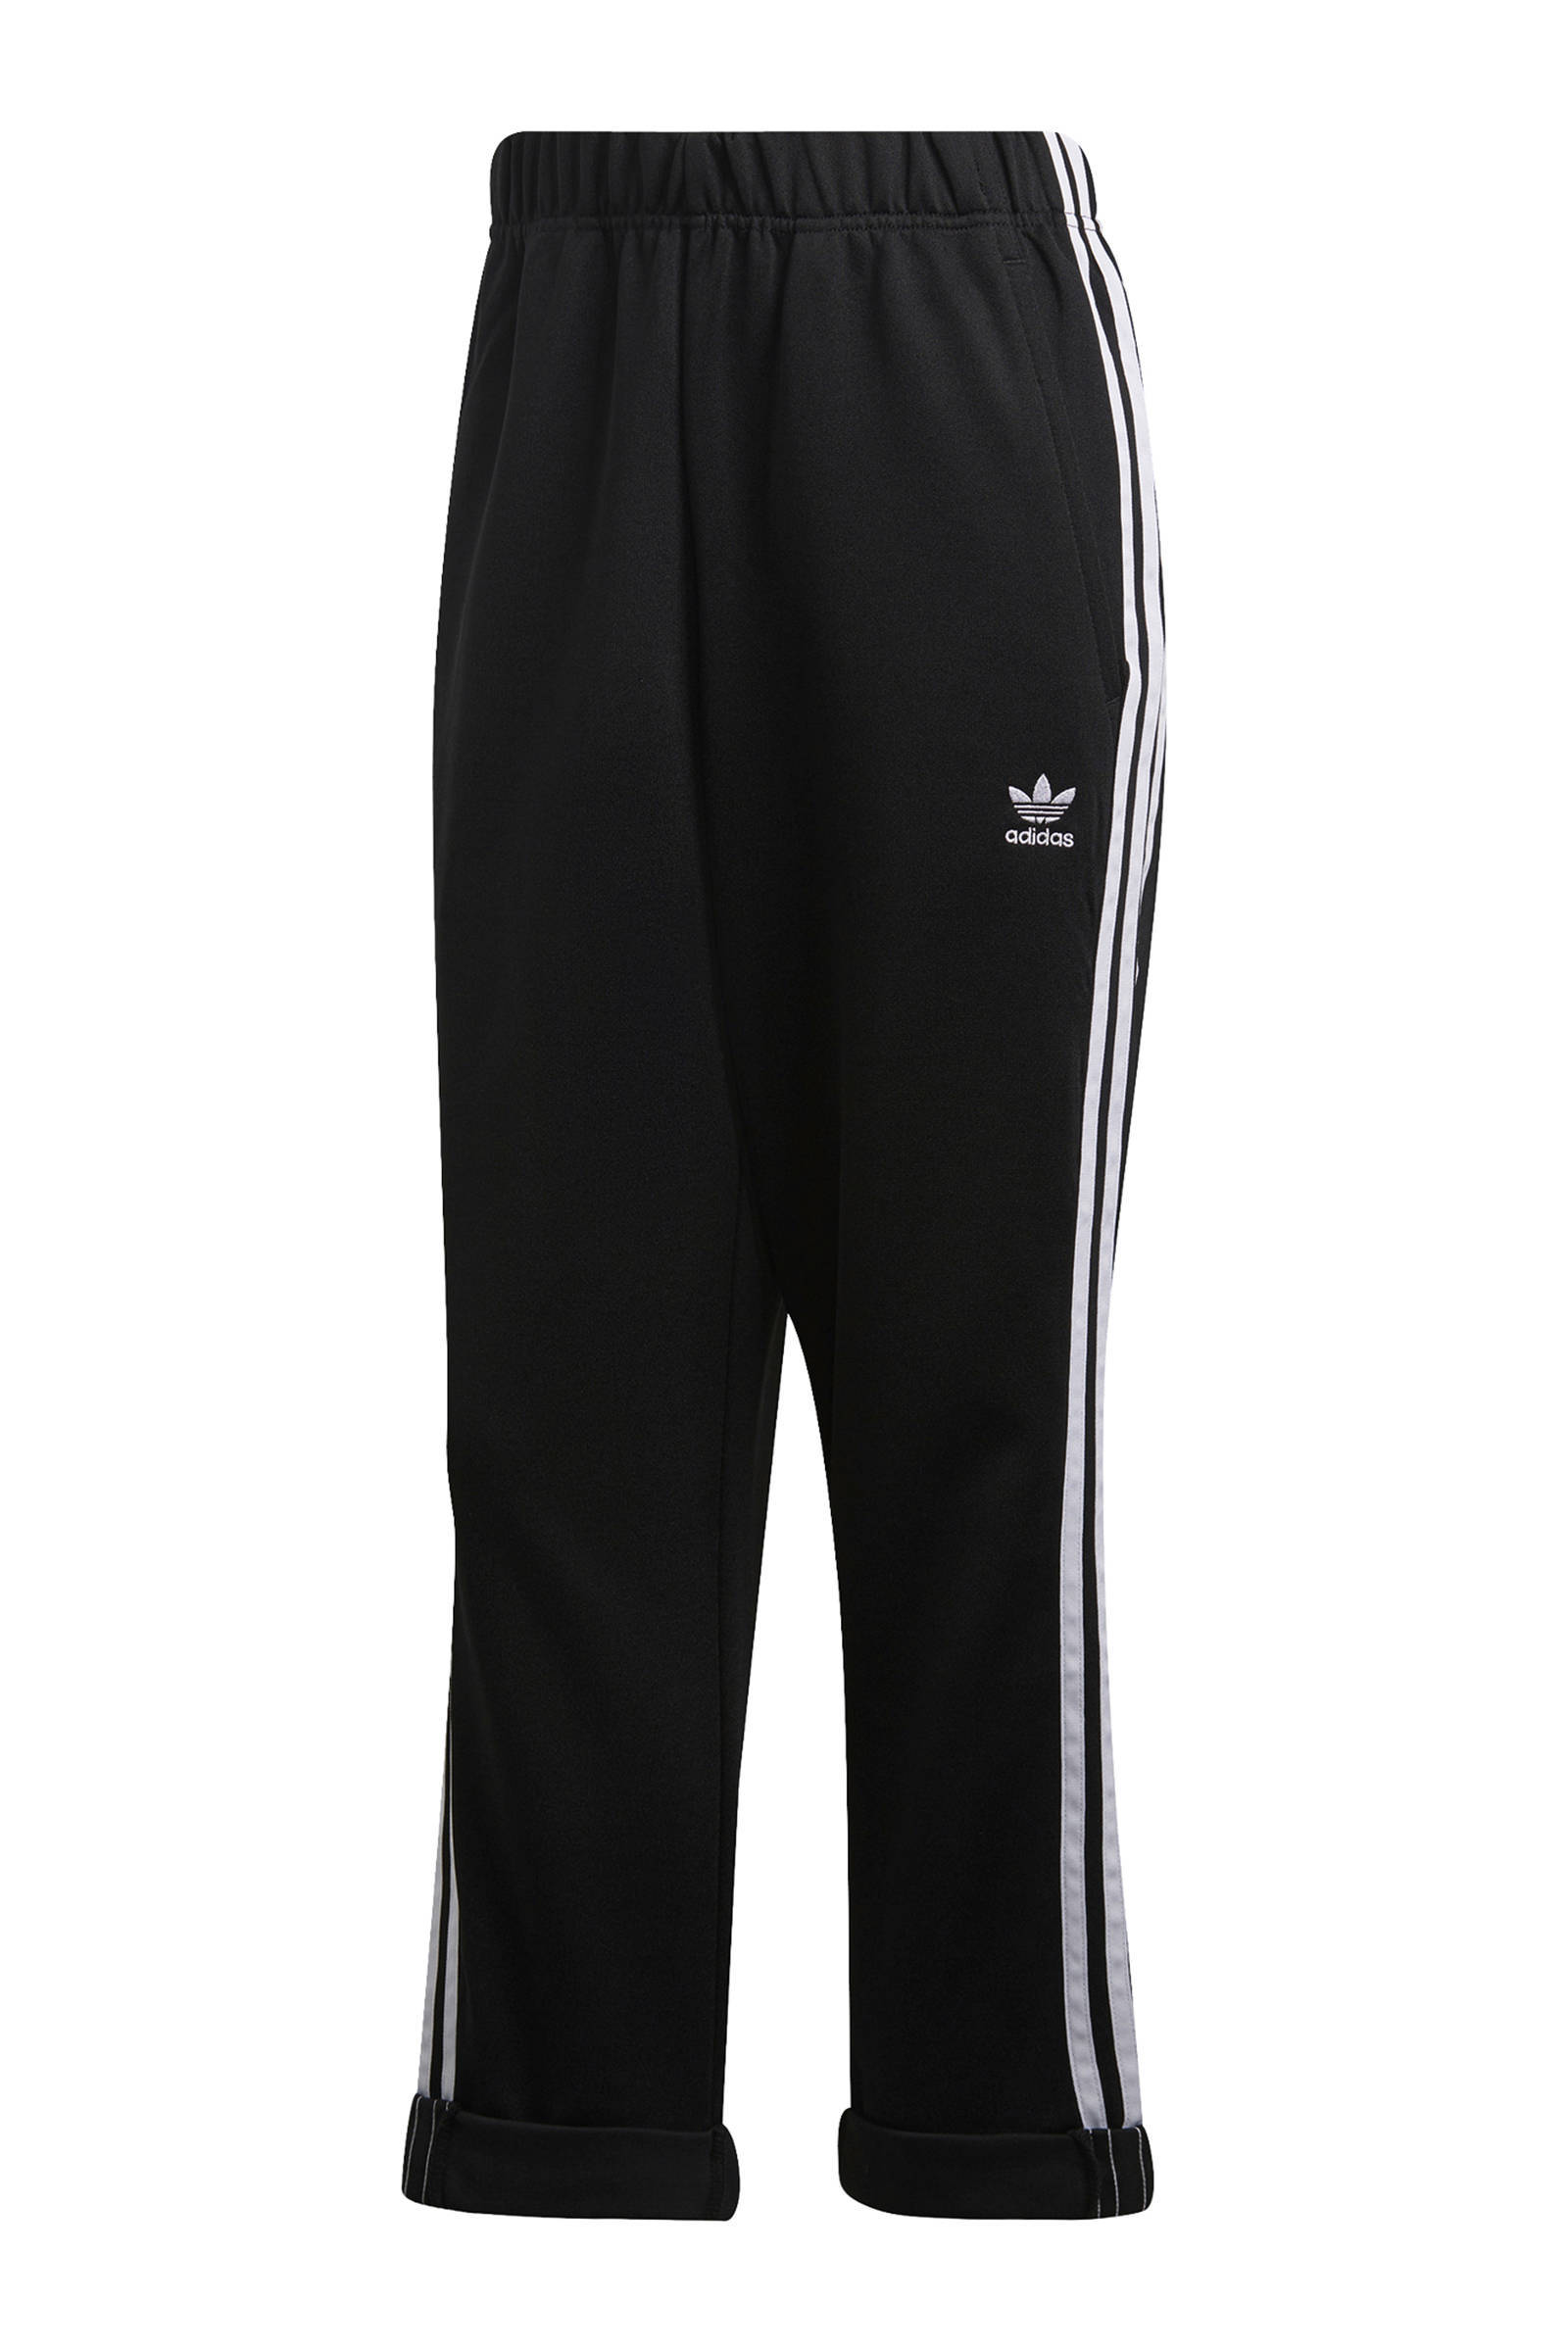 Adidas Originals Sweatpants Zwart Dames online kopen